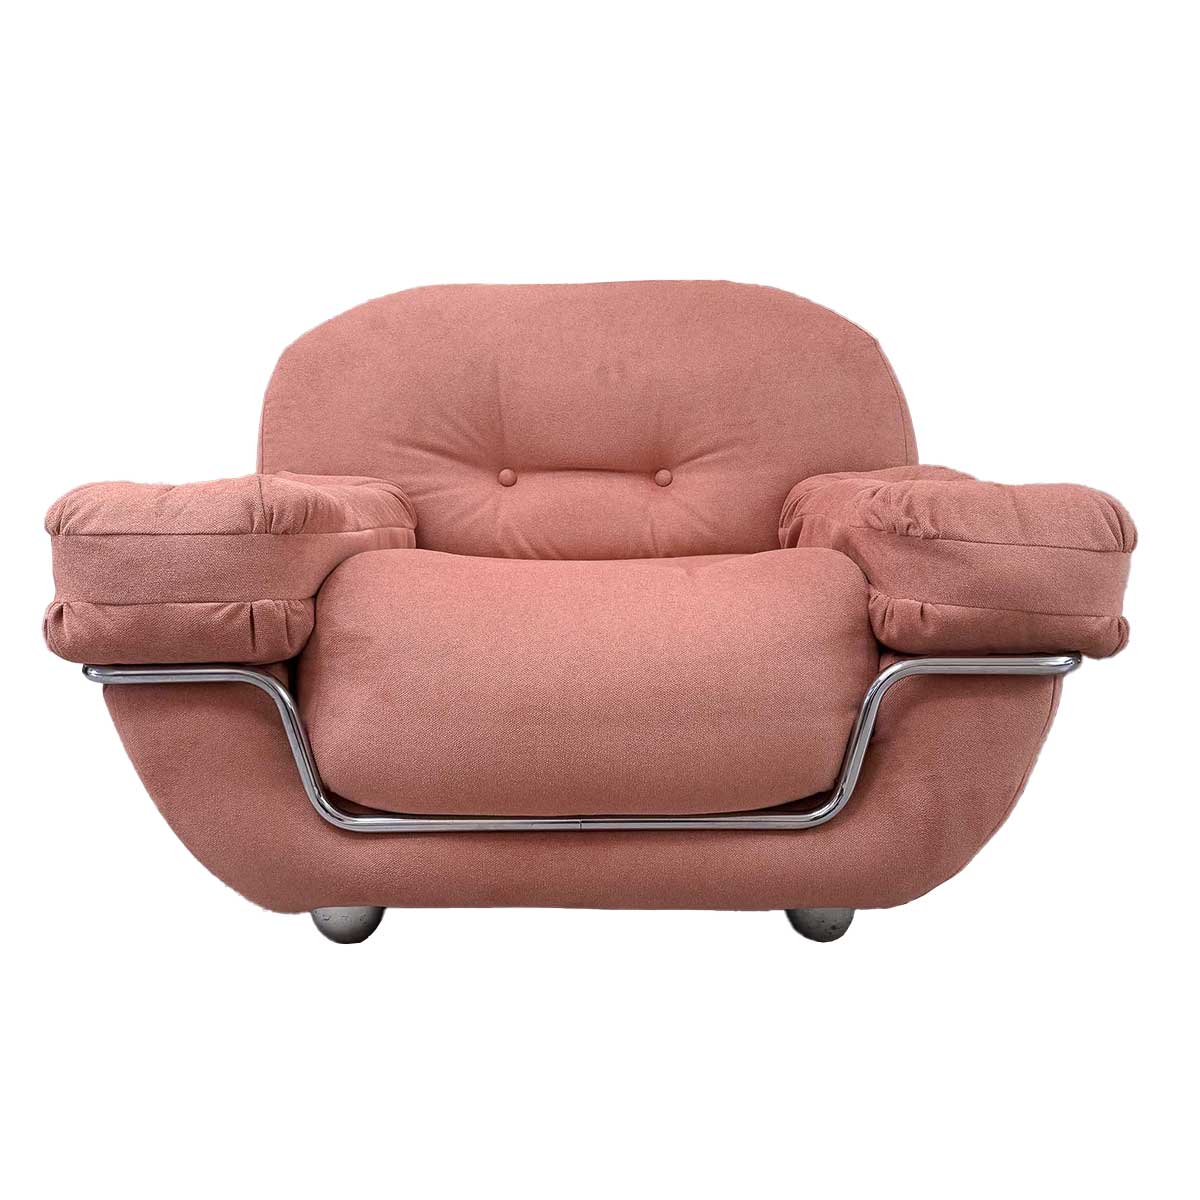 80's Chubby Lounge Chair Chrome Tubular Frame - Peach